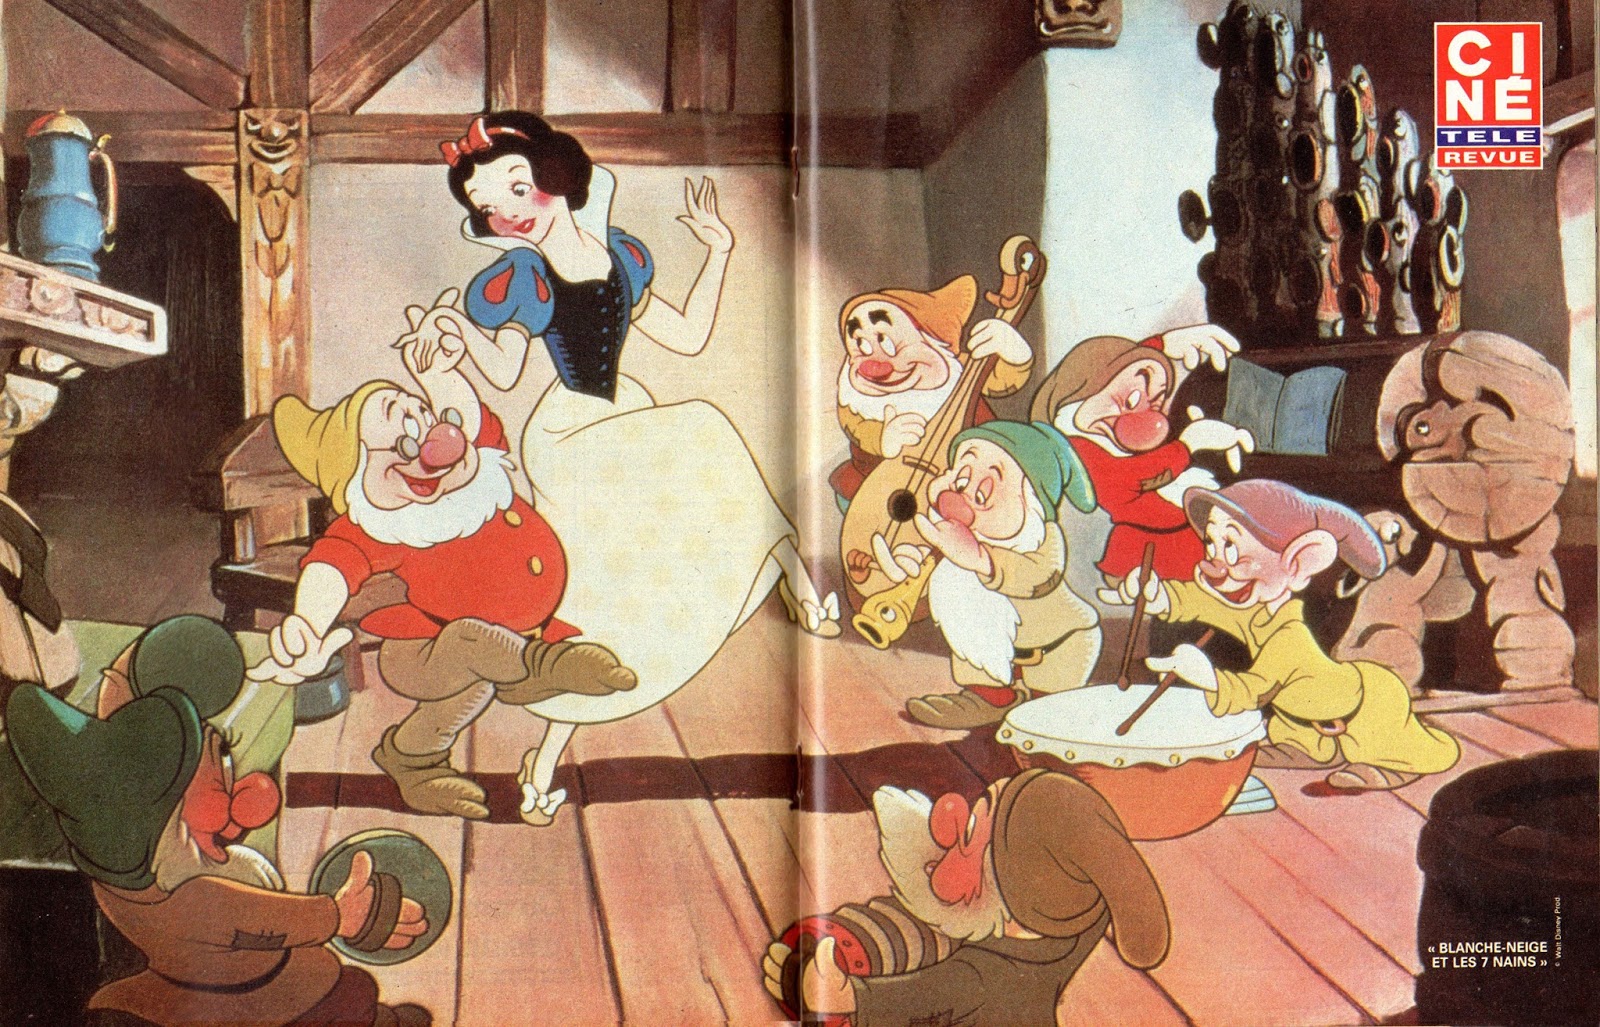 Смотреть бесплатно онлайн сказку белоснежка и семь гномов: Белоснежка и семь Гномов мультфильм 1937 смотреть онлайн бесплатно